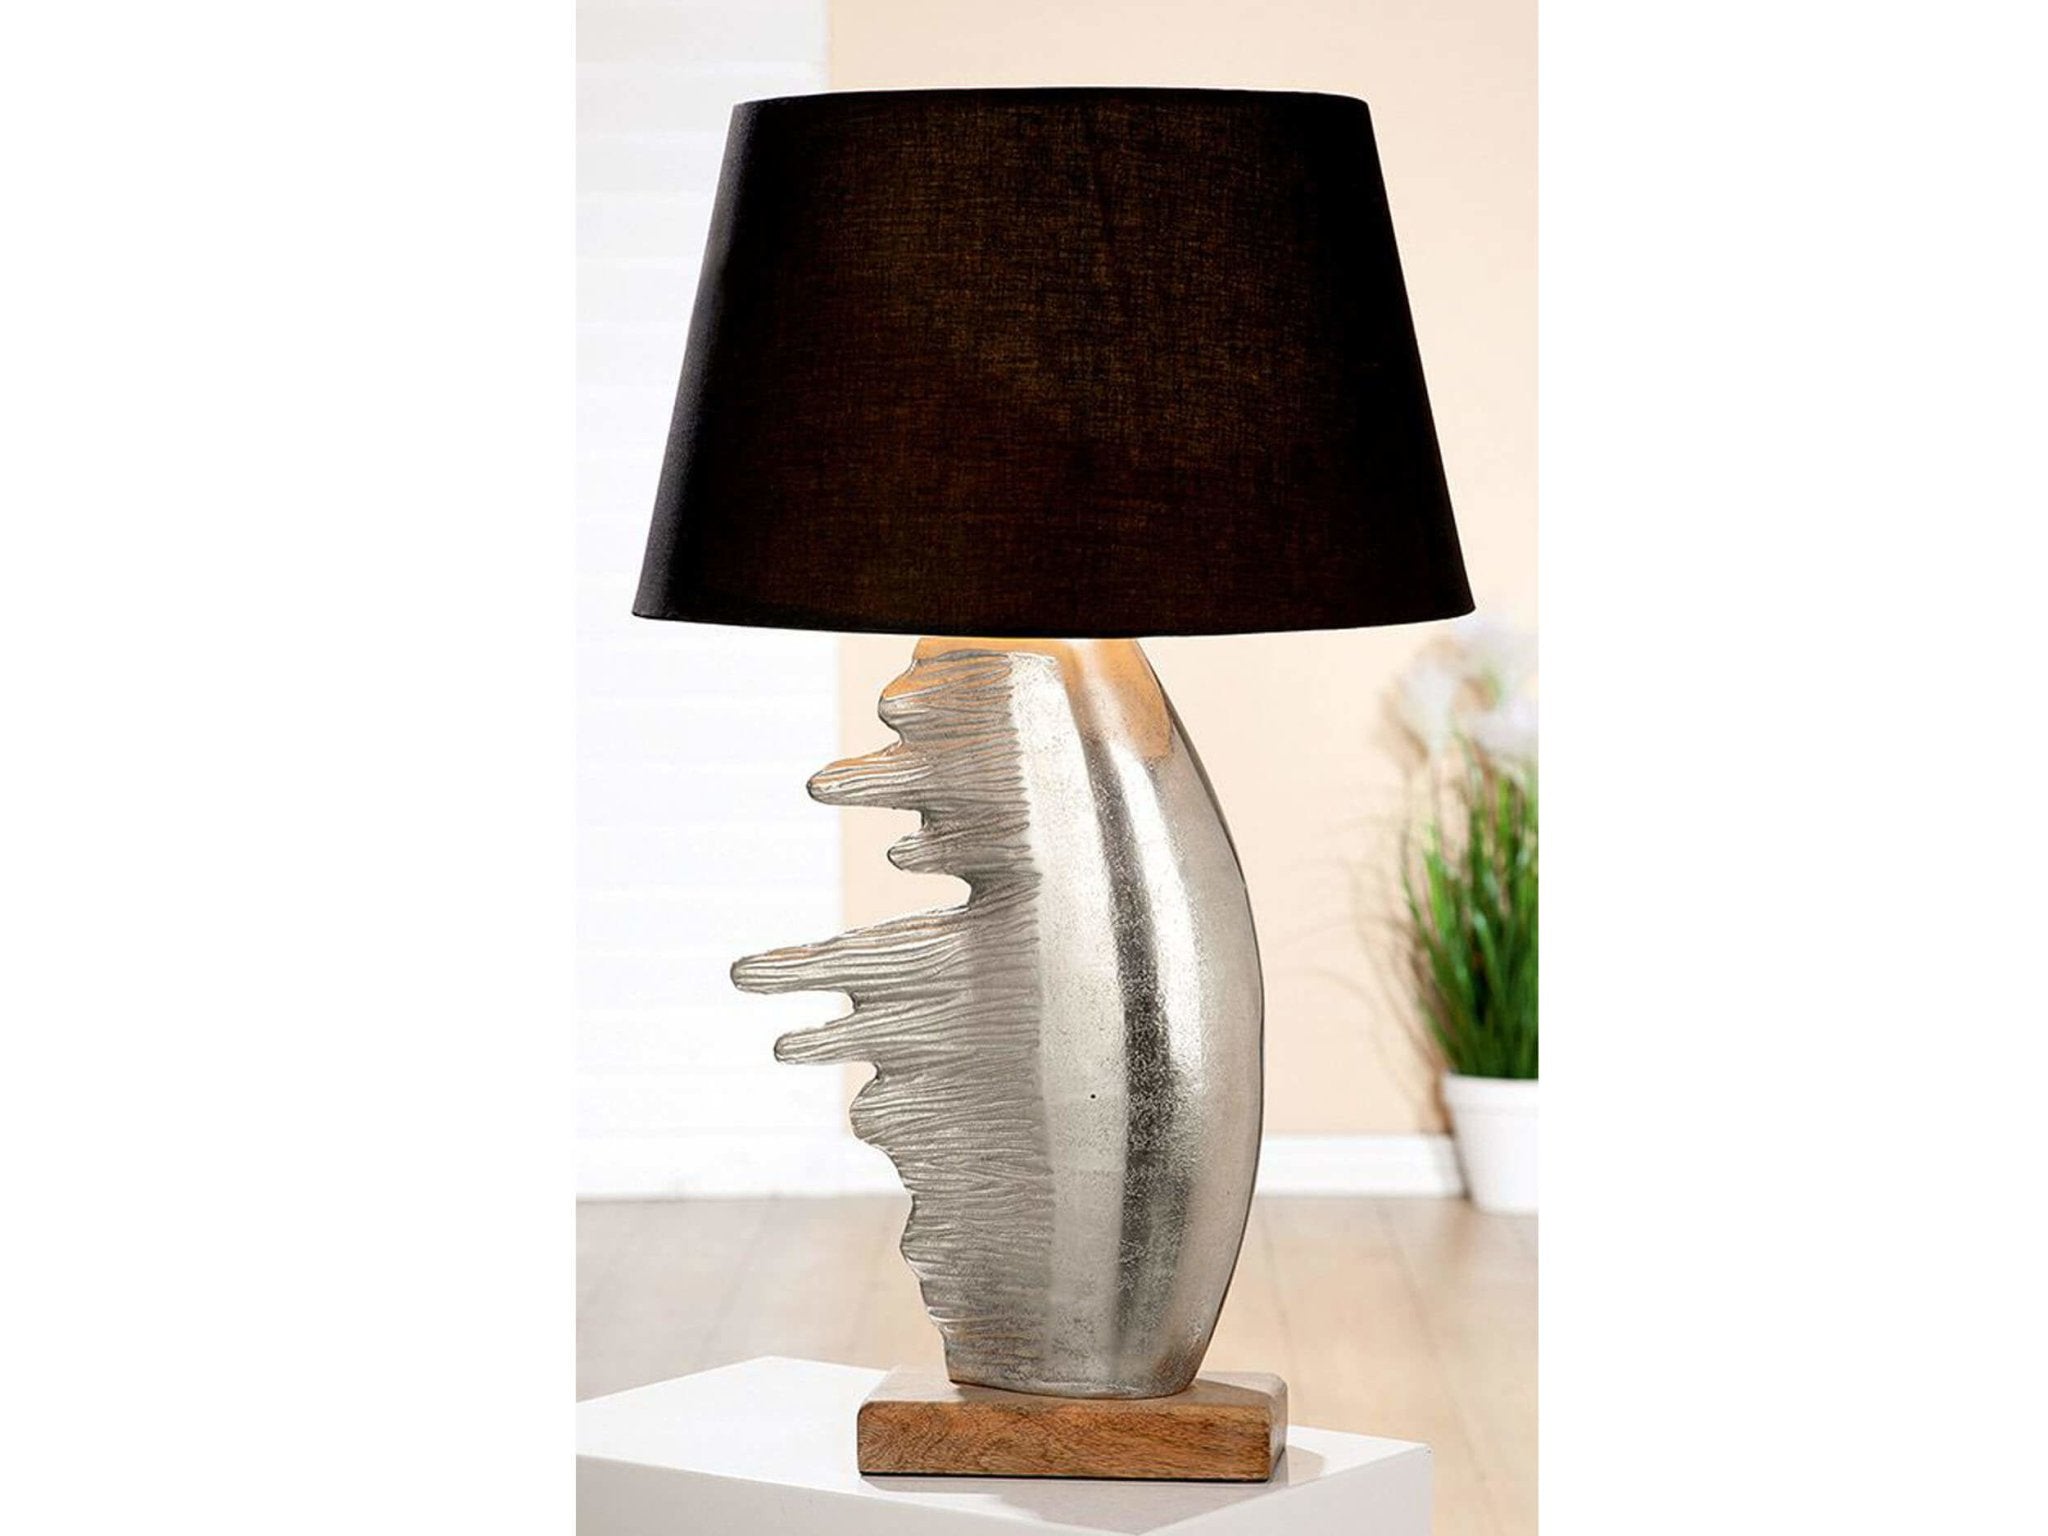 Tafellamp in zilver met houten voet en donkerbruine lampenkap